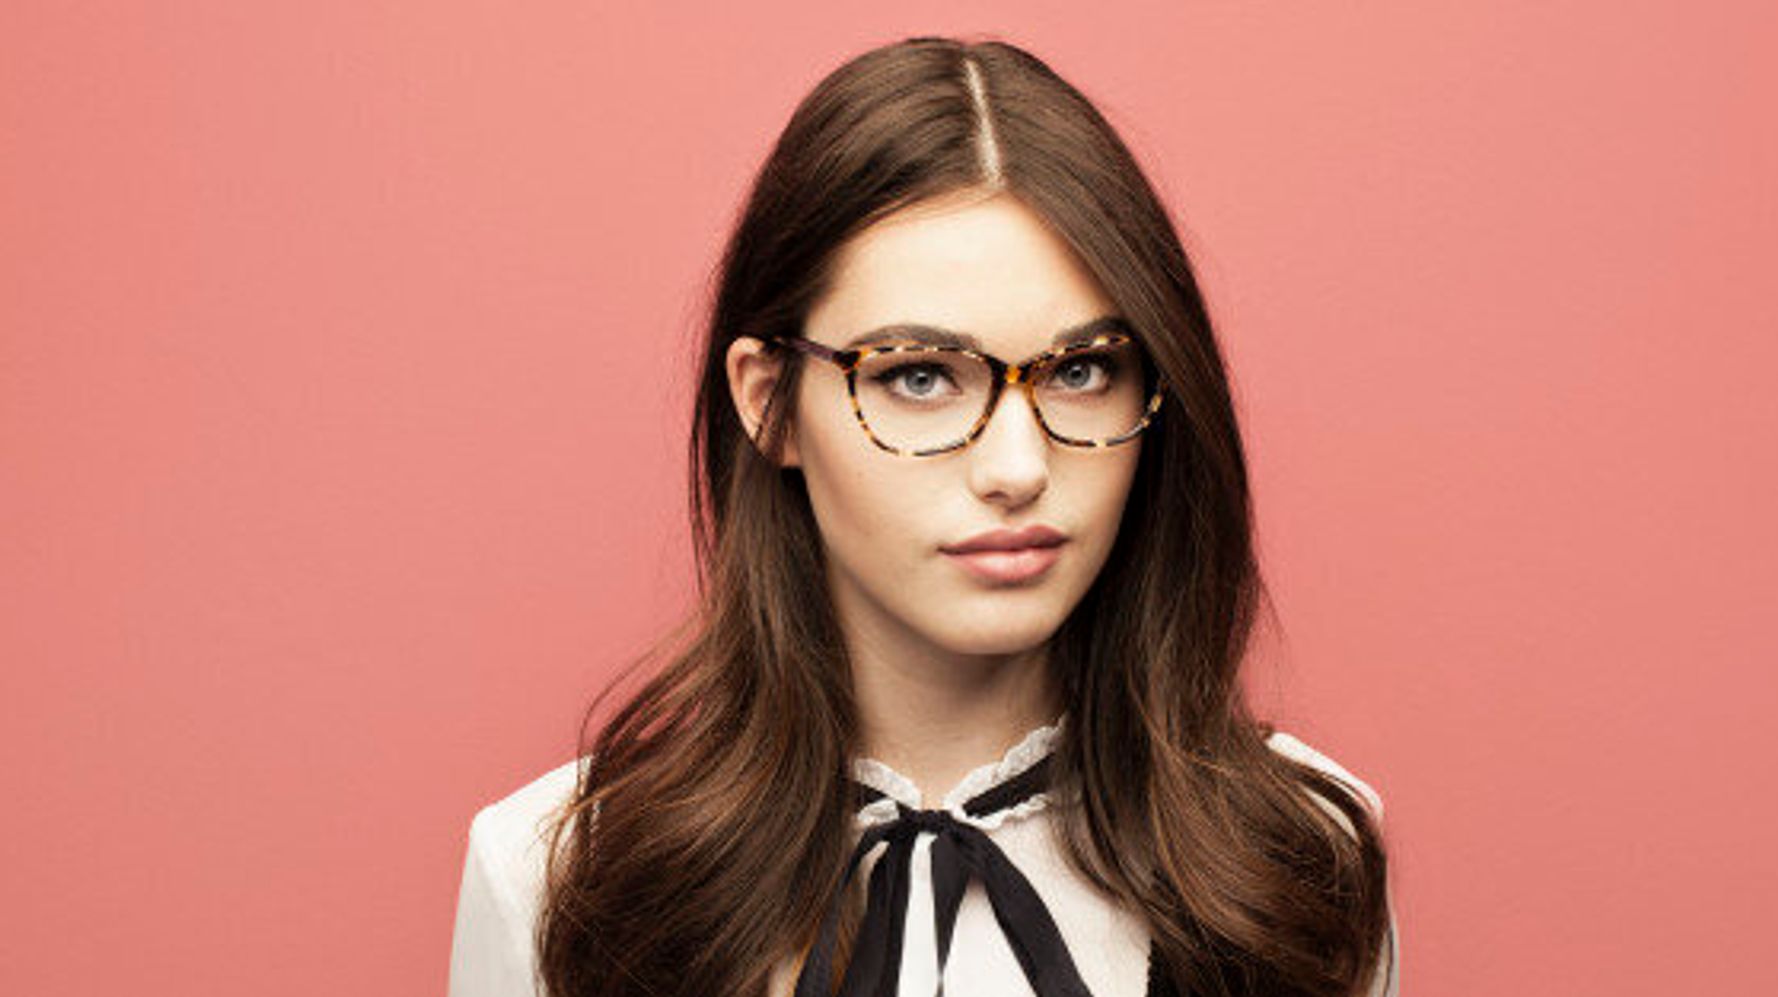 Montures de lunettes - Shopping en ligne